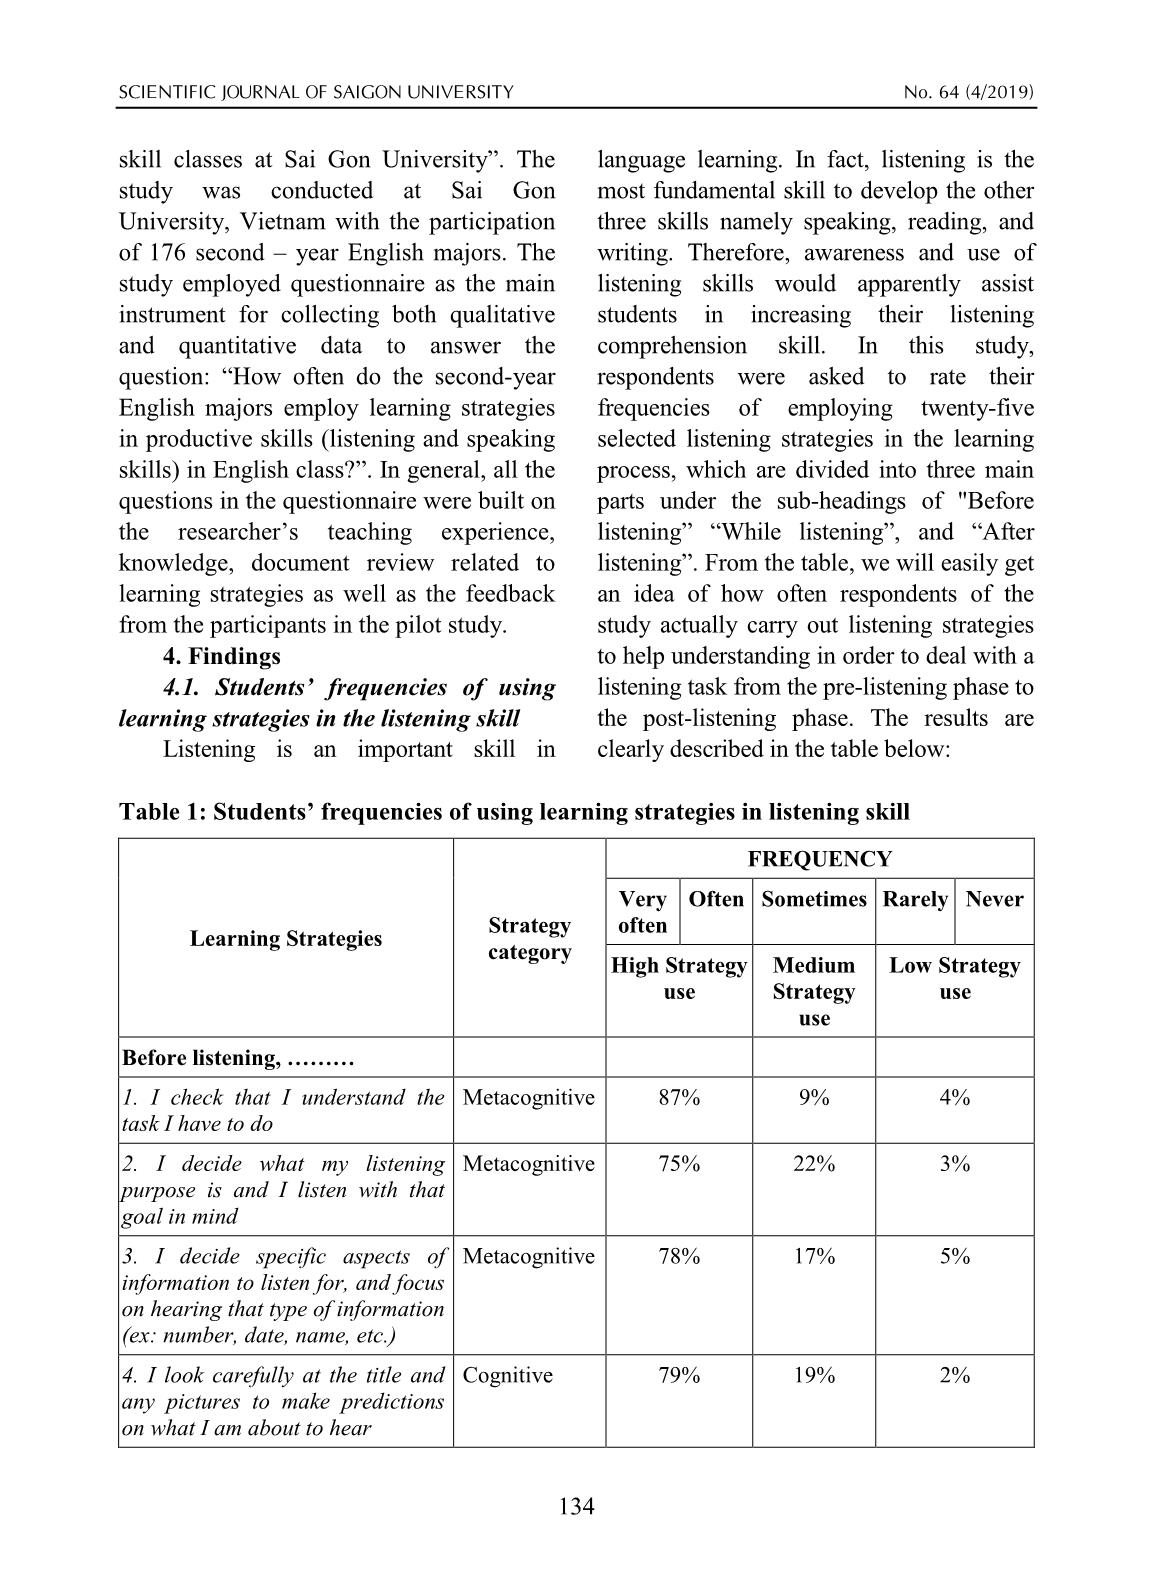 Khảo sát về tần suất sử dụng các chiến lược học tập của sinh viên năm hai chuyên ngữ trong việc học các kỹ năng nghe nói tiếng Anh ở Trường Đại học Sài Gòn trang 5